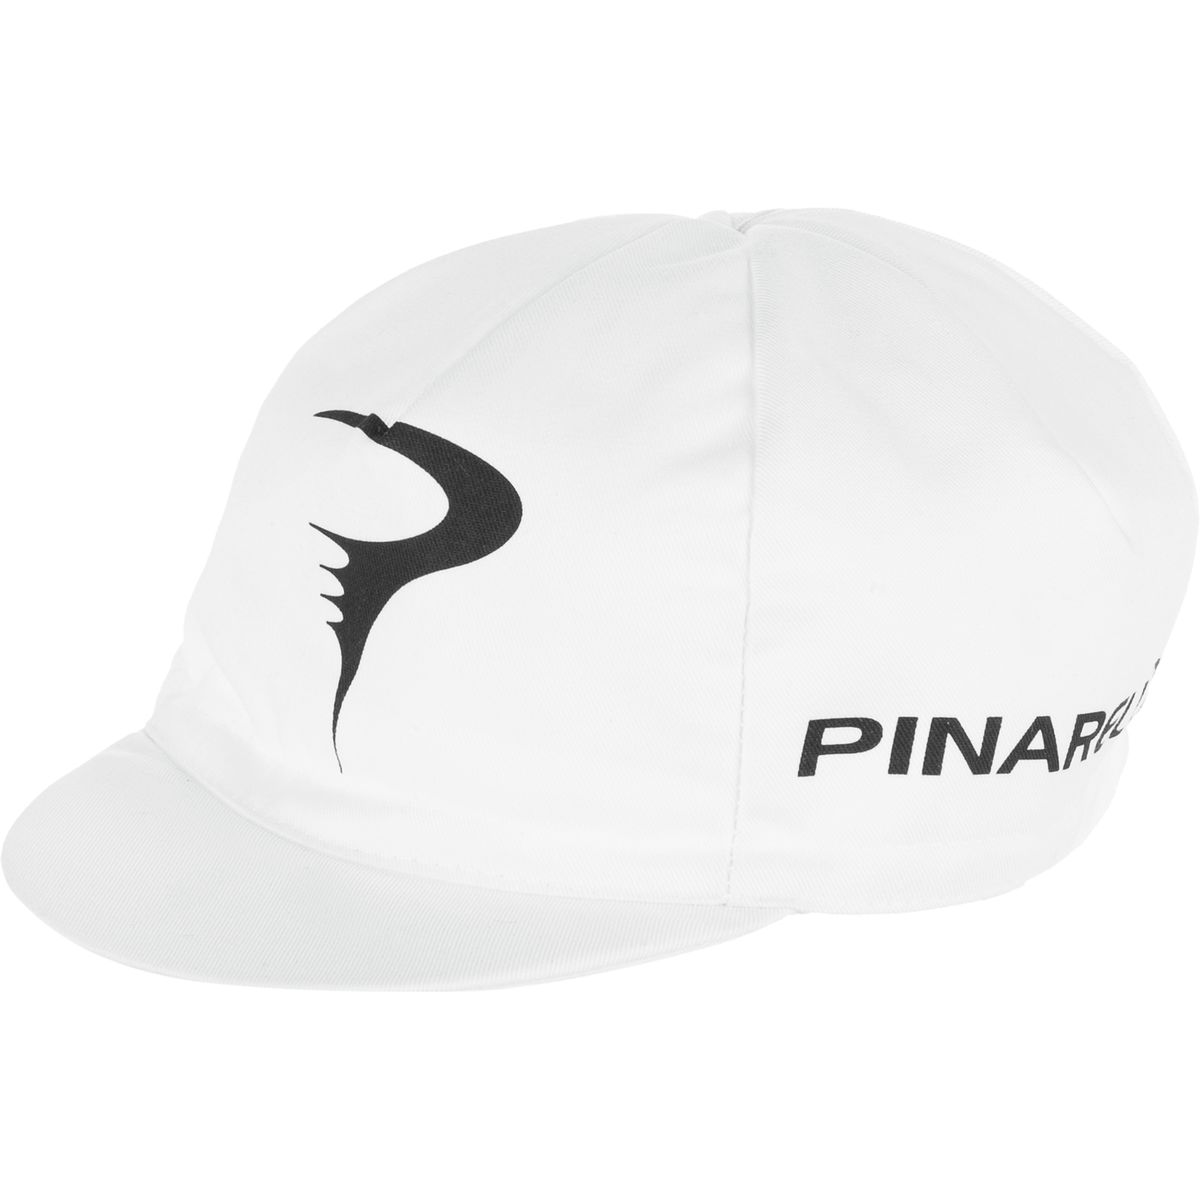 Pinarello Cotton Cap